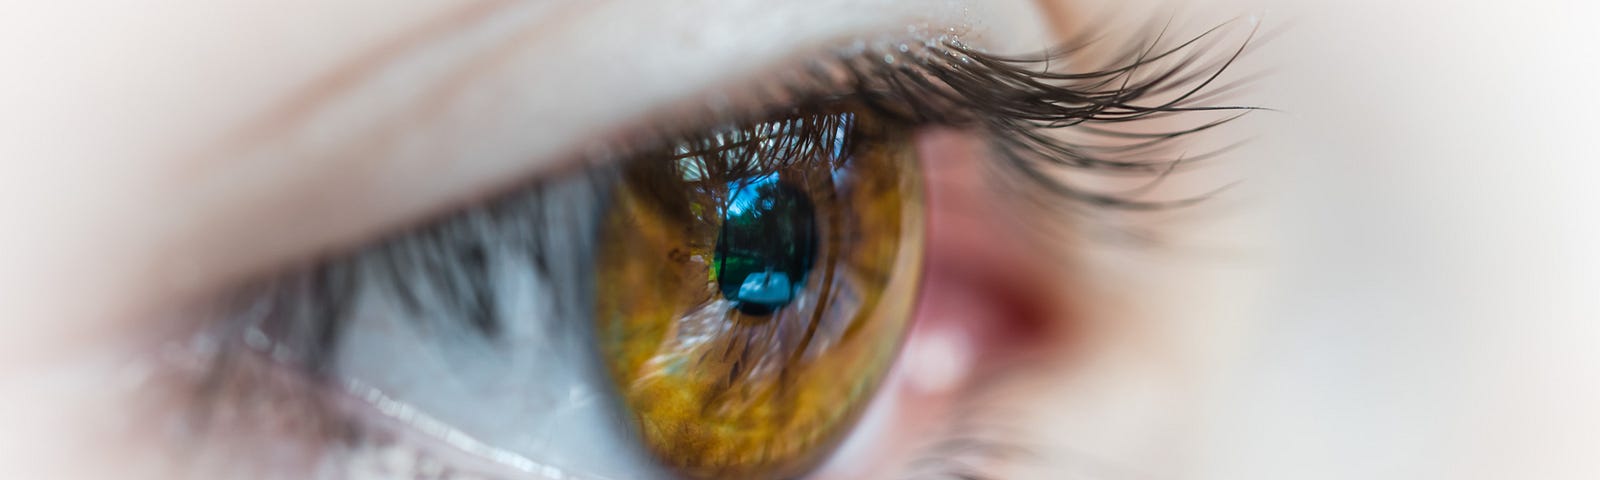 Closeup of a light brown eye